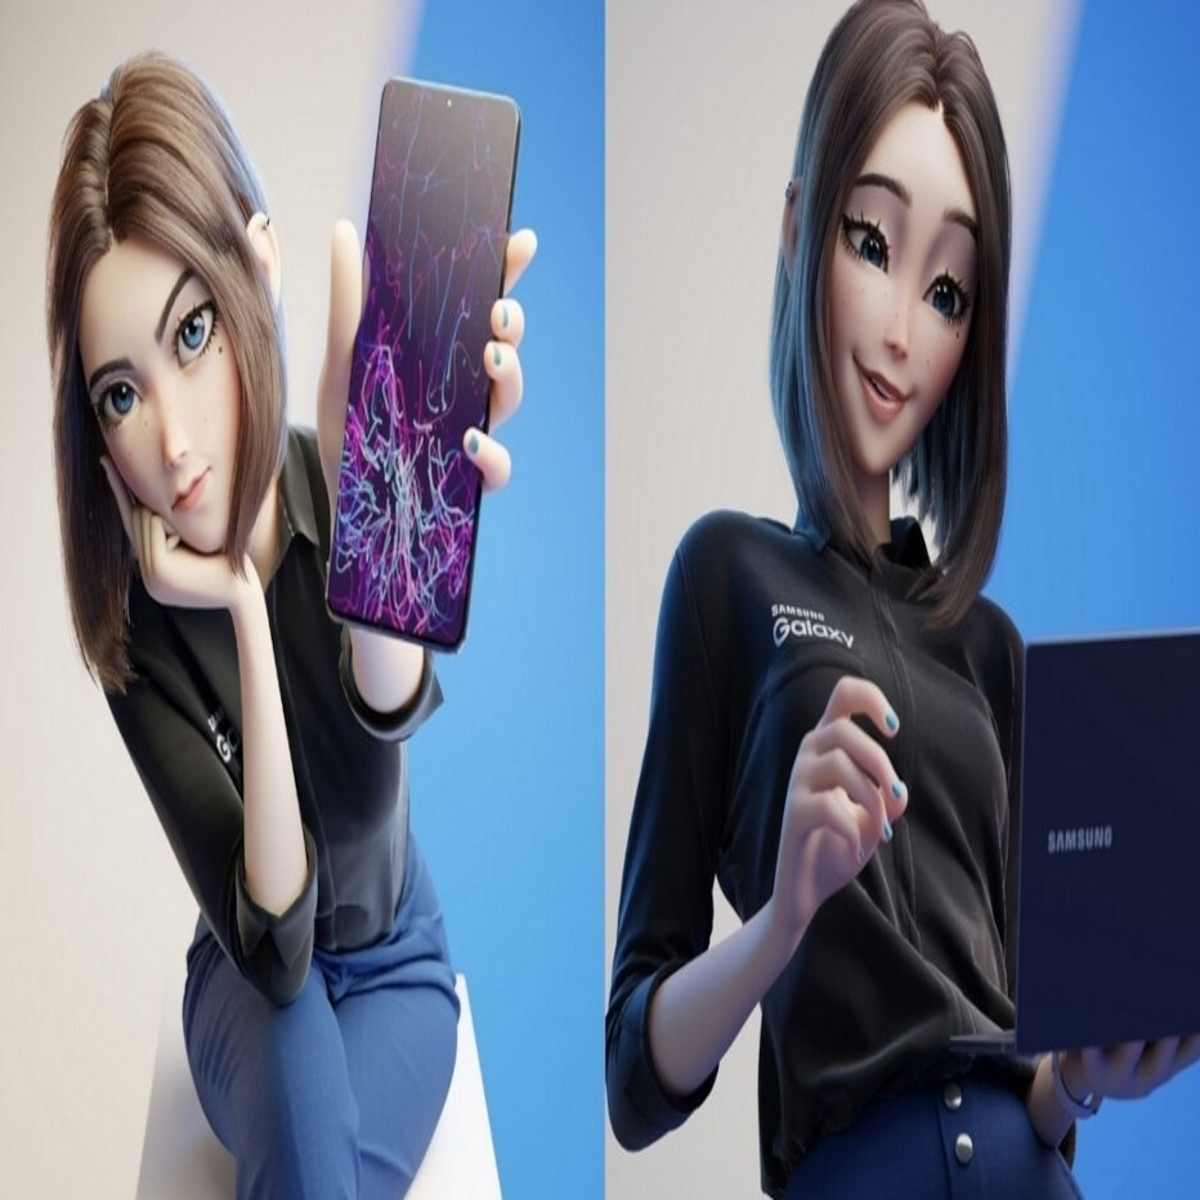 Sam pode ser a próxima assistente virtual 3D da Samsung